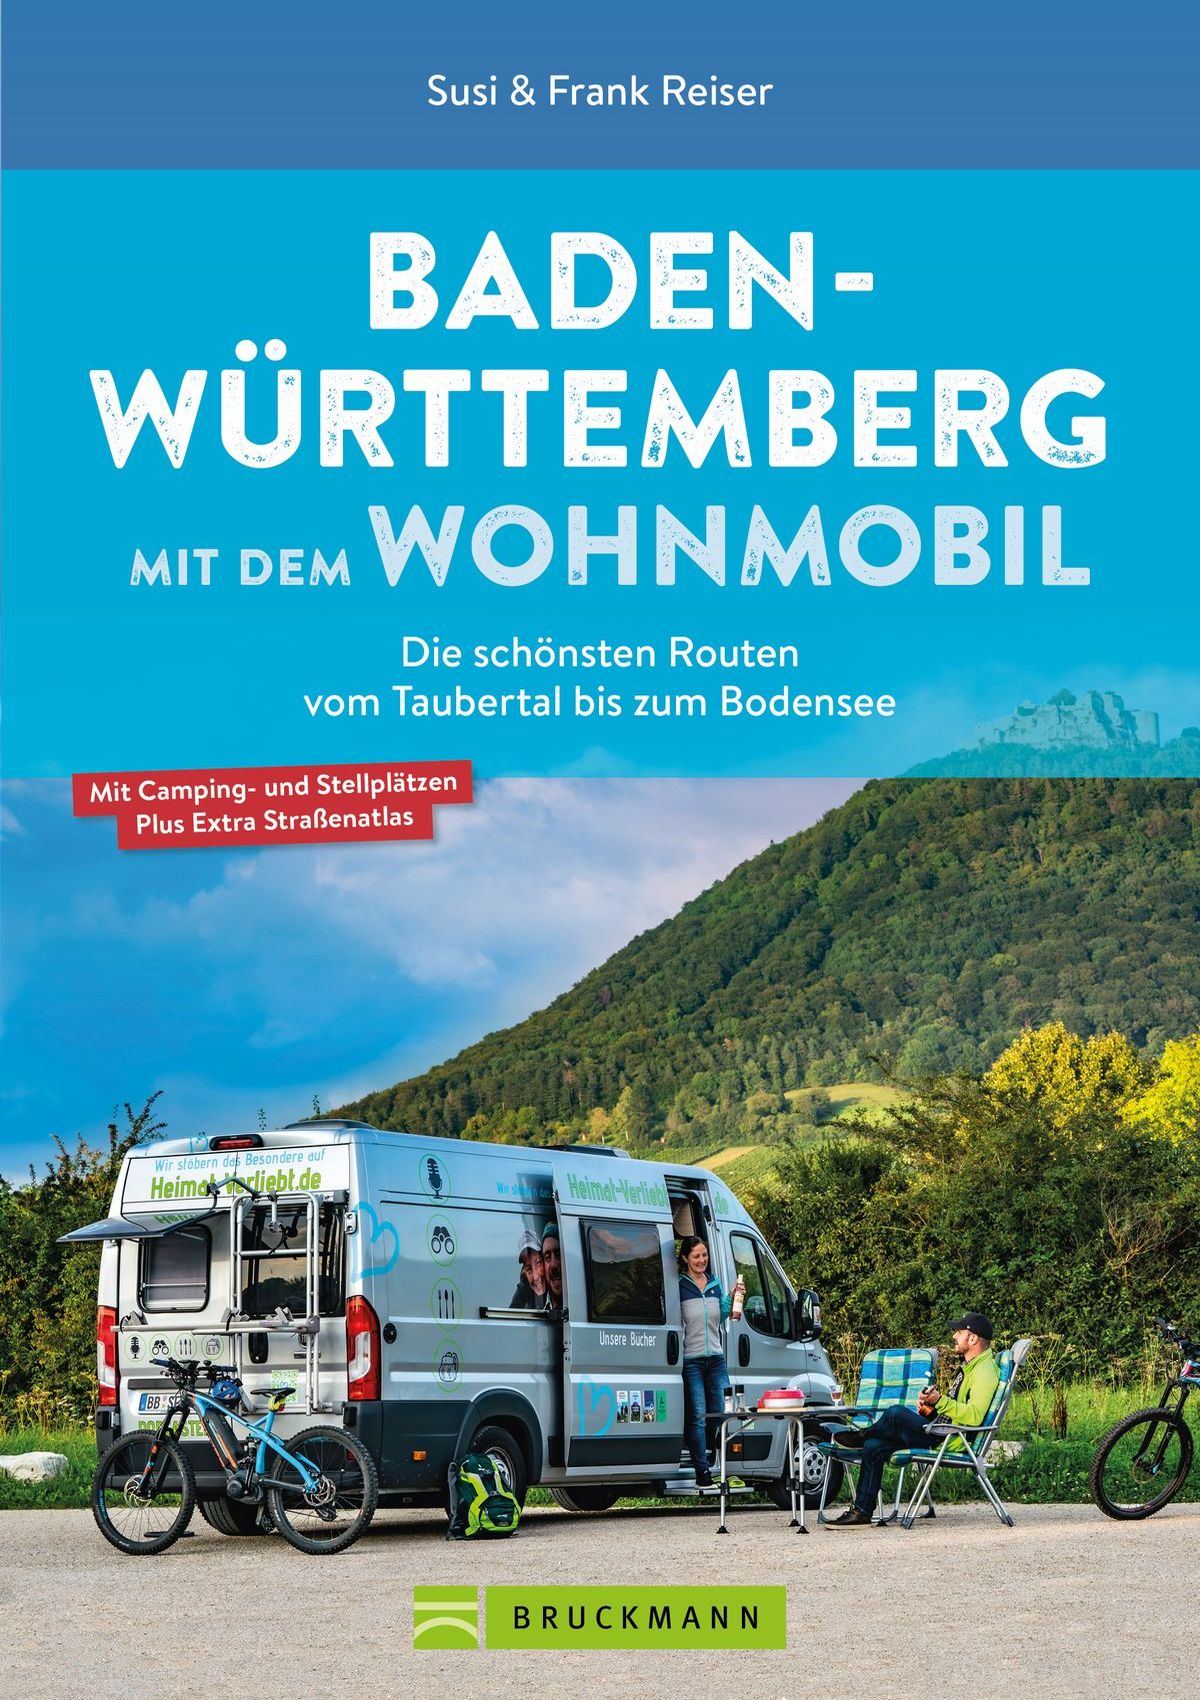 Bruckmann Verlag Wohnmobil